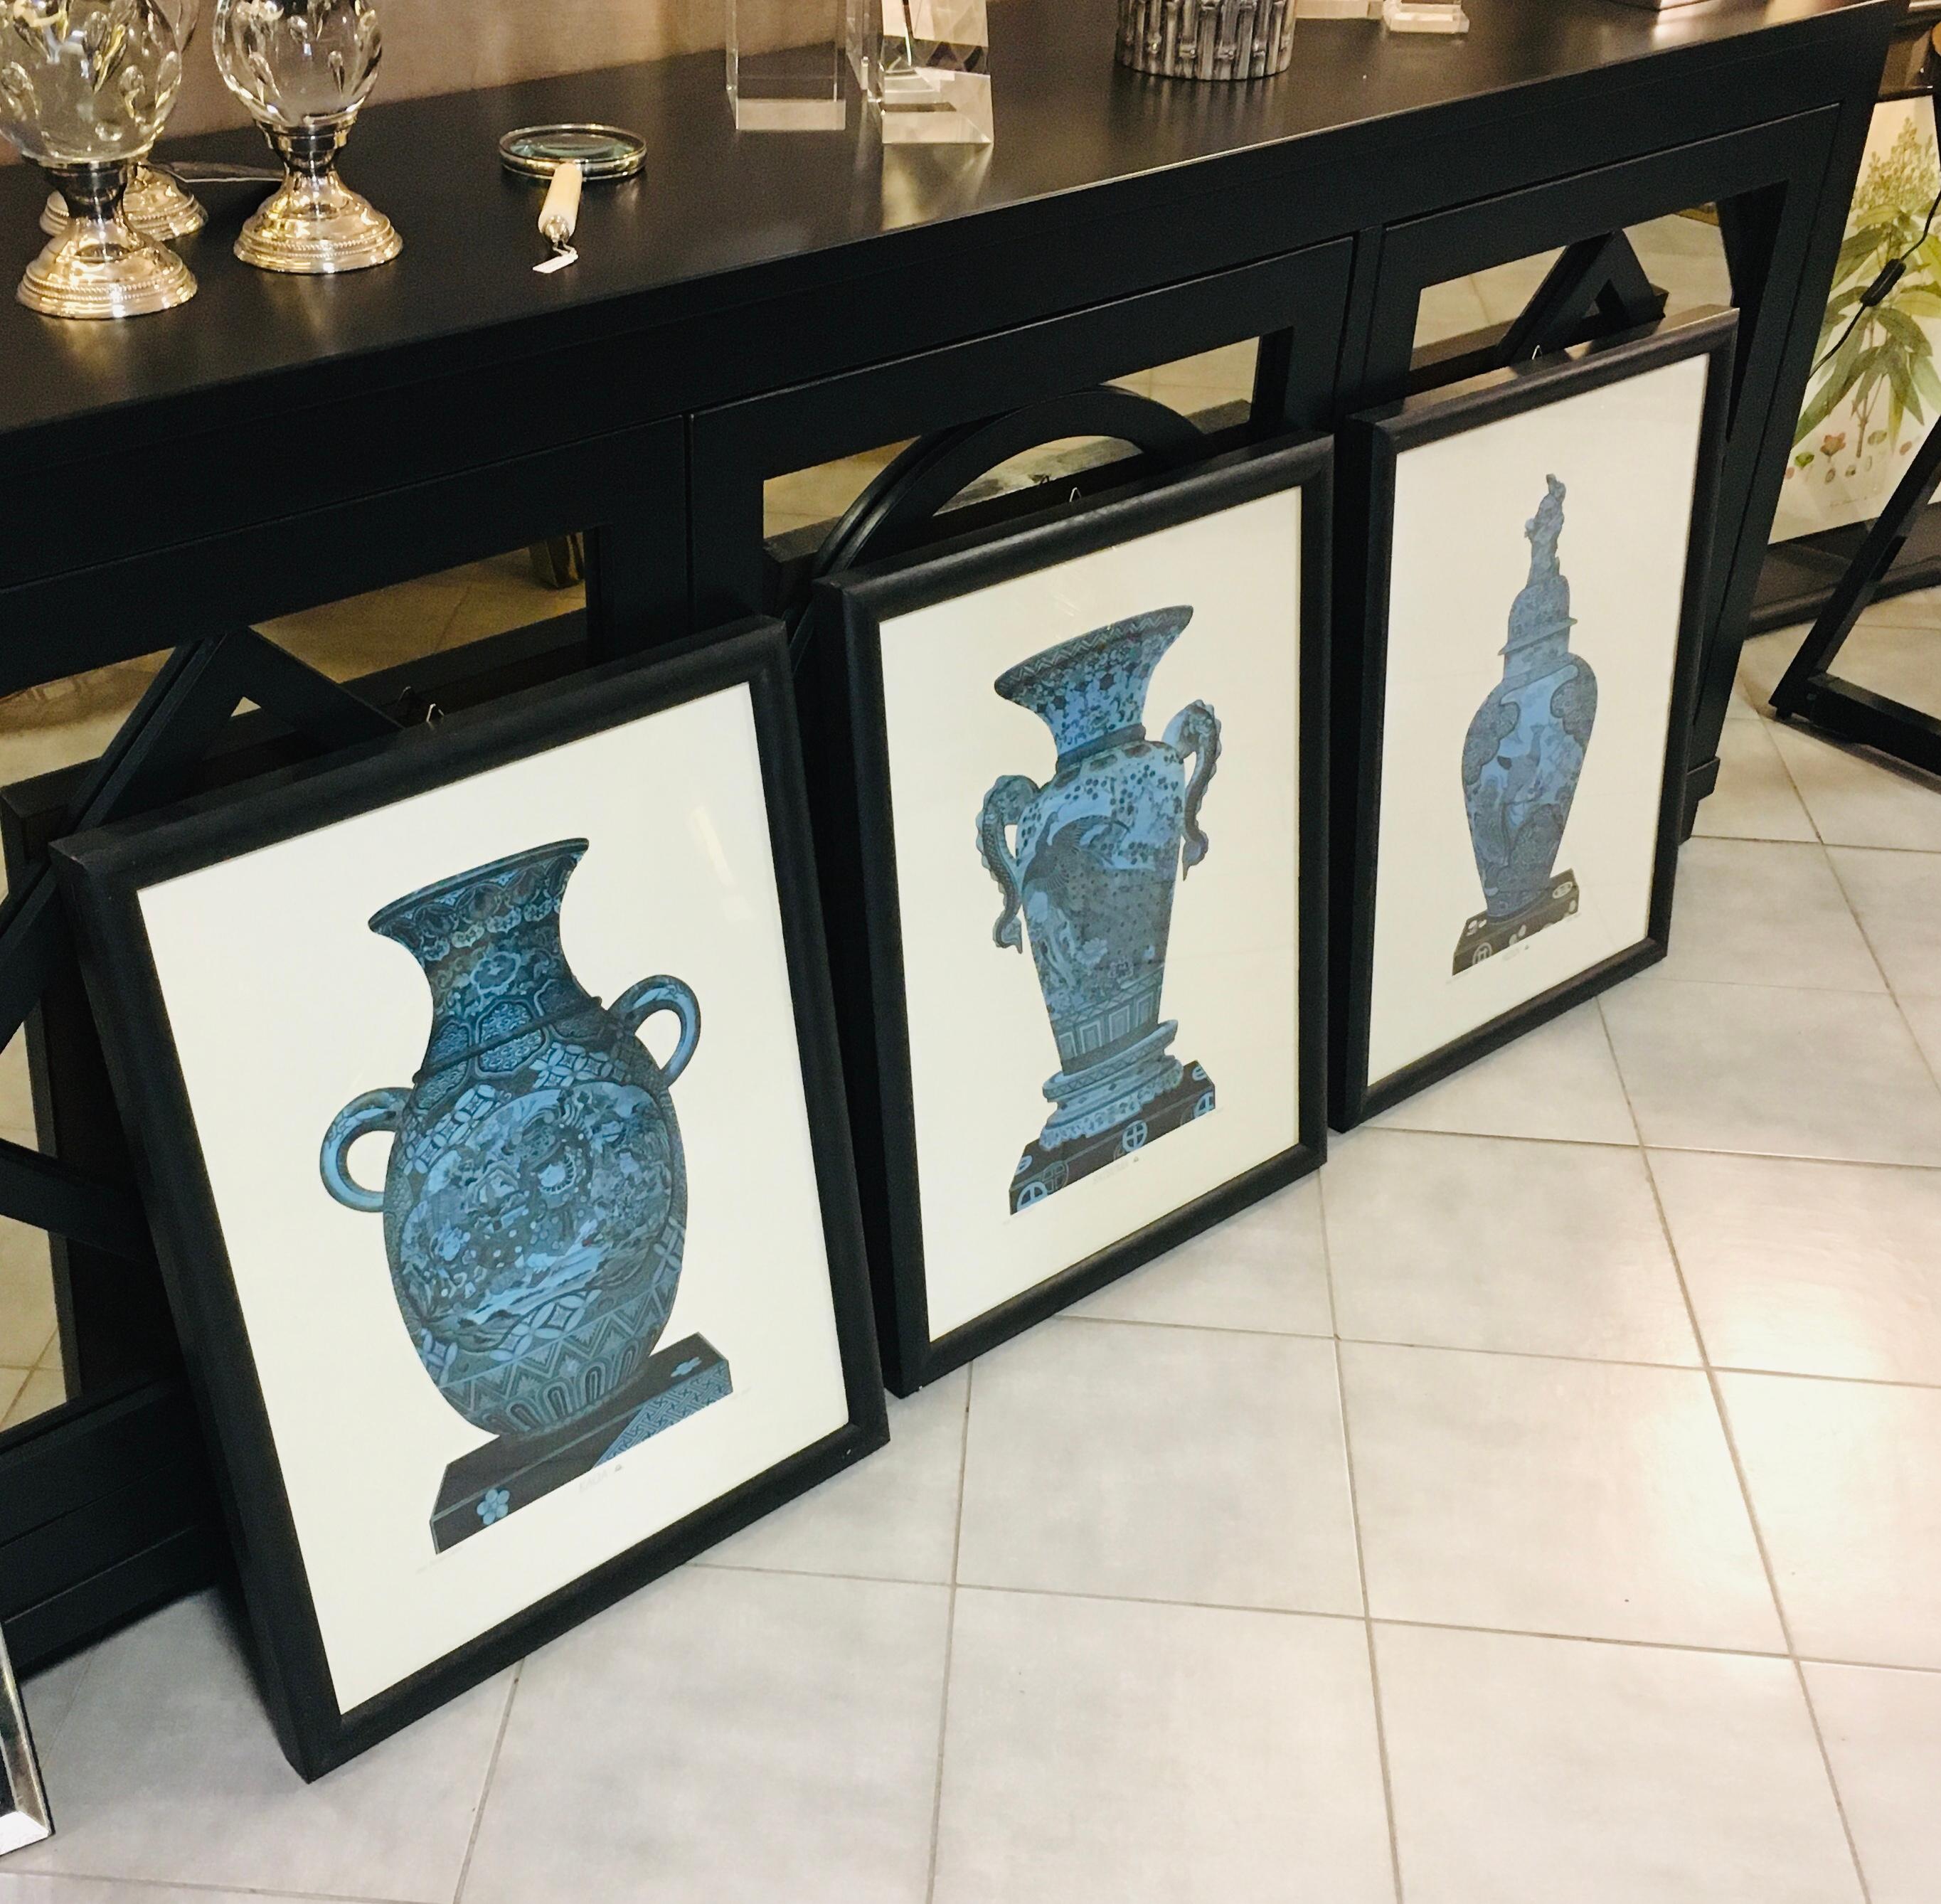 Serie von drei Drucken, die 3 verschiedene antike chinesische Vasen darstellen, mit einem schwarz patinierten Holzrahmen, gedruckt mit einer antiken Presse und gefärbt von unseren besten lokalen Handwerkern.
Artecornici Design verfügt über mehr als